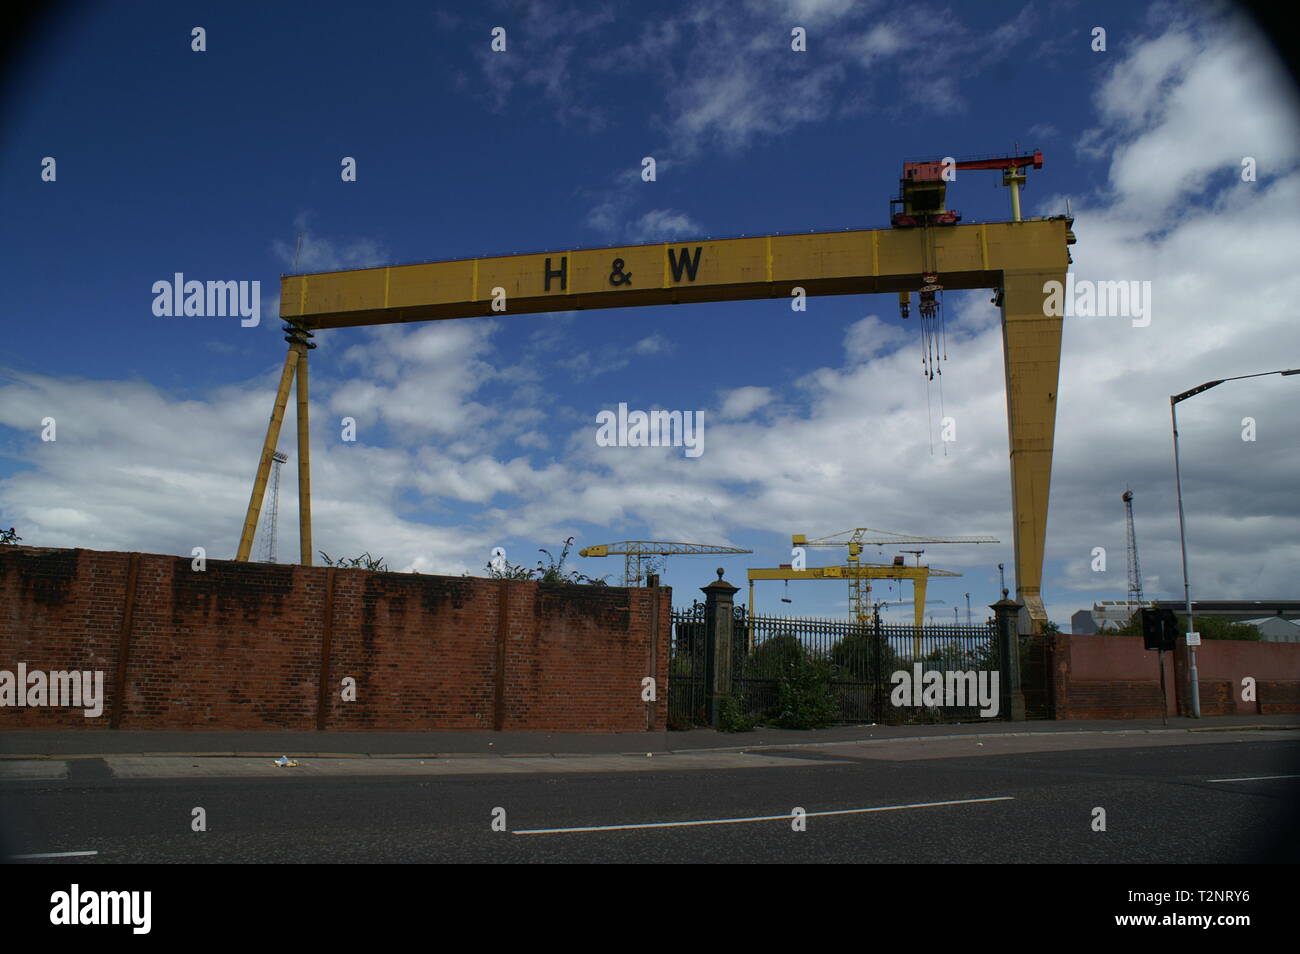 Samson und Goliath Portalkrane, zwei massive Portalkrane in Harland und Wolff Werft, Belfast Stockfoto